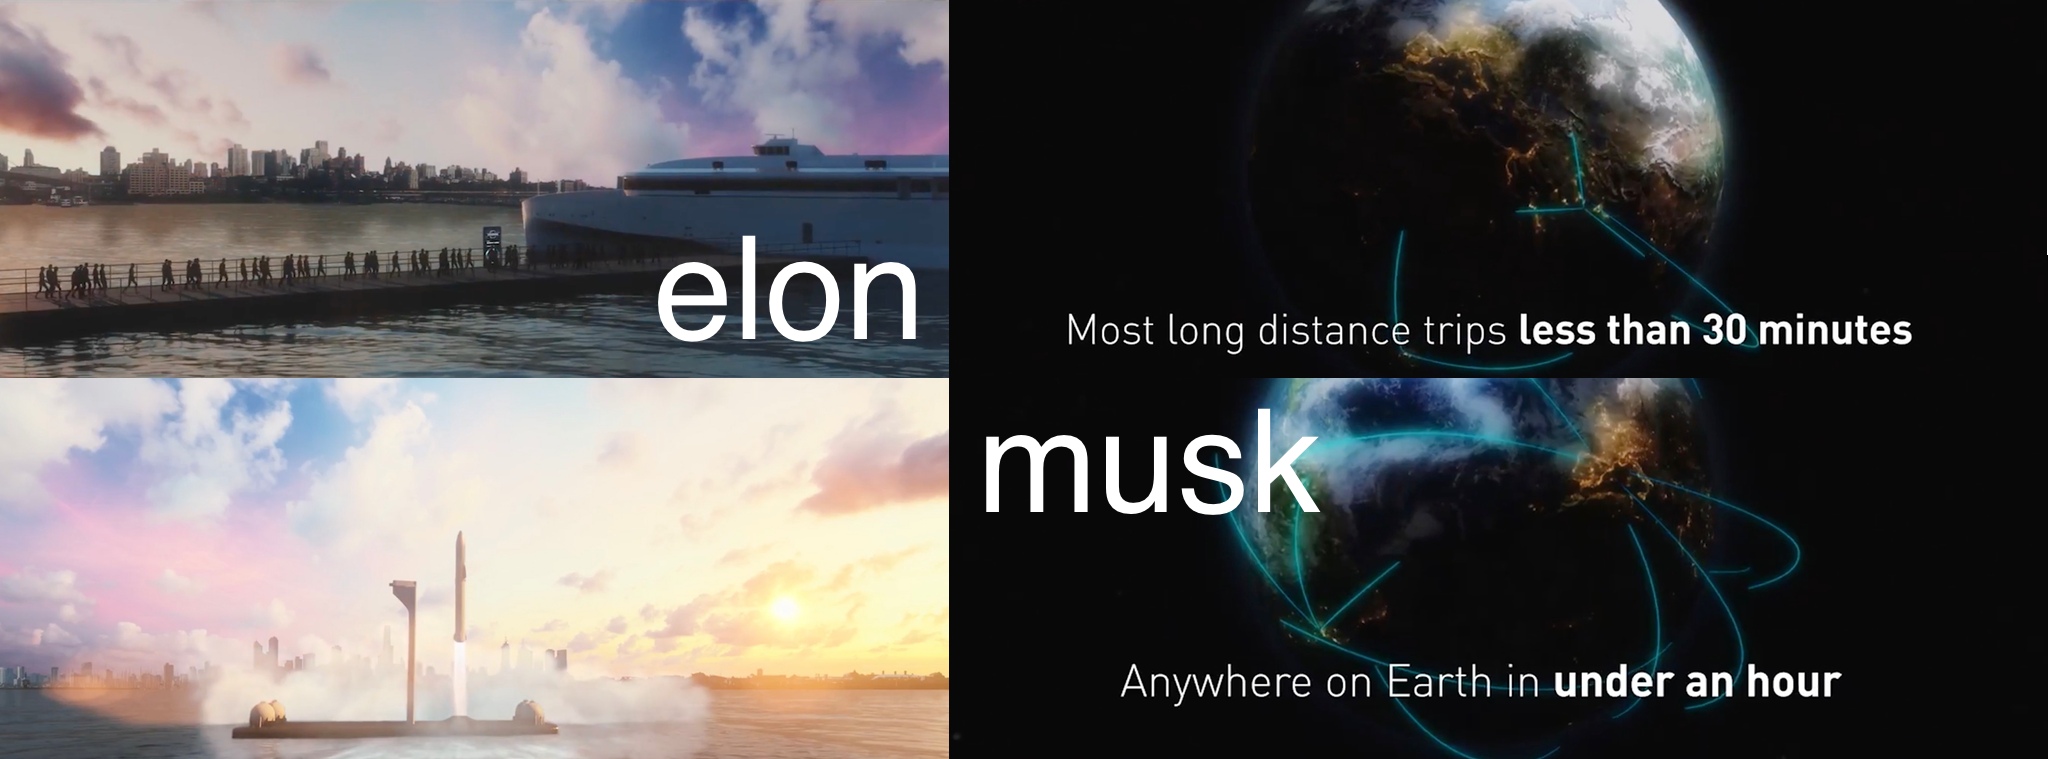 Elon Musk: Ý tưởng bay từ VN tới Mỹ trong 30 phút, bay tới mọi nơi trên thế giới dưới 1 giờ